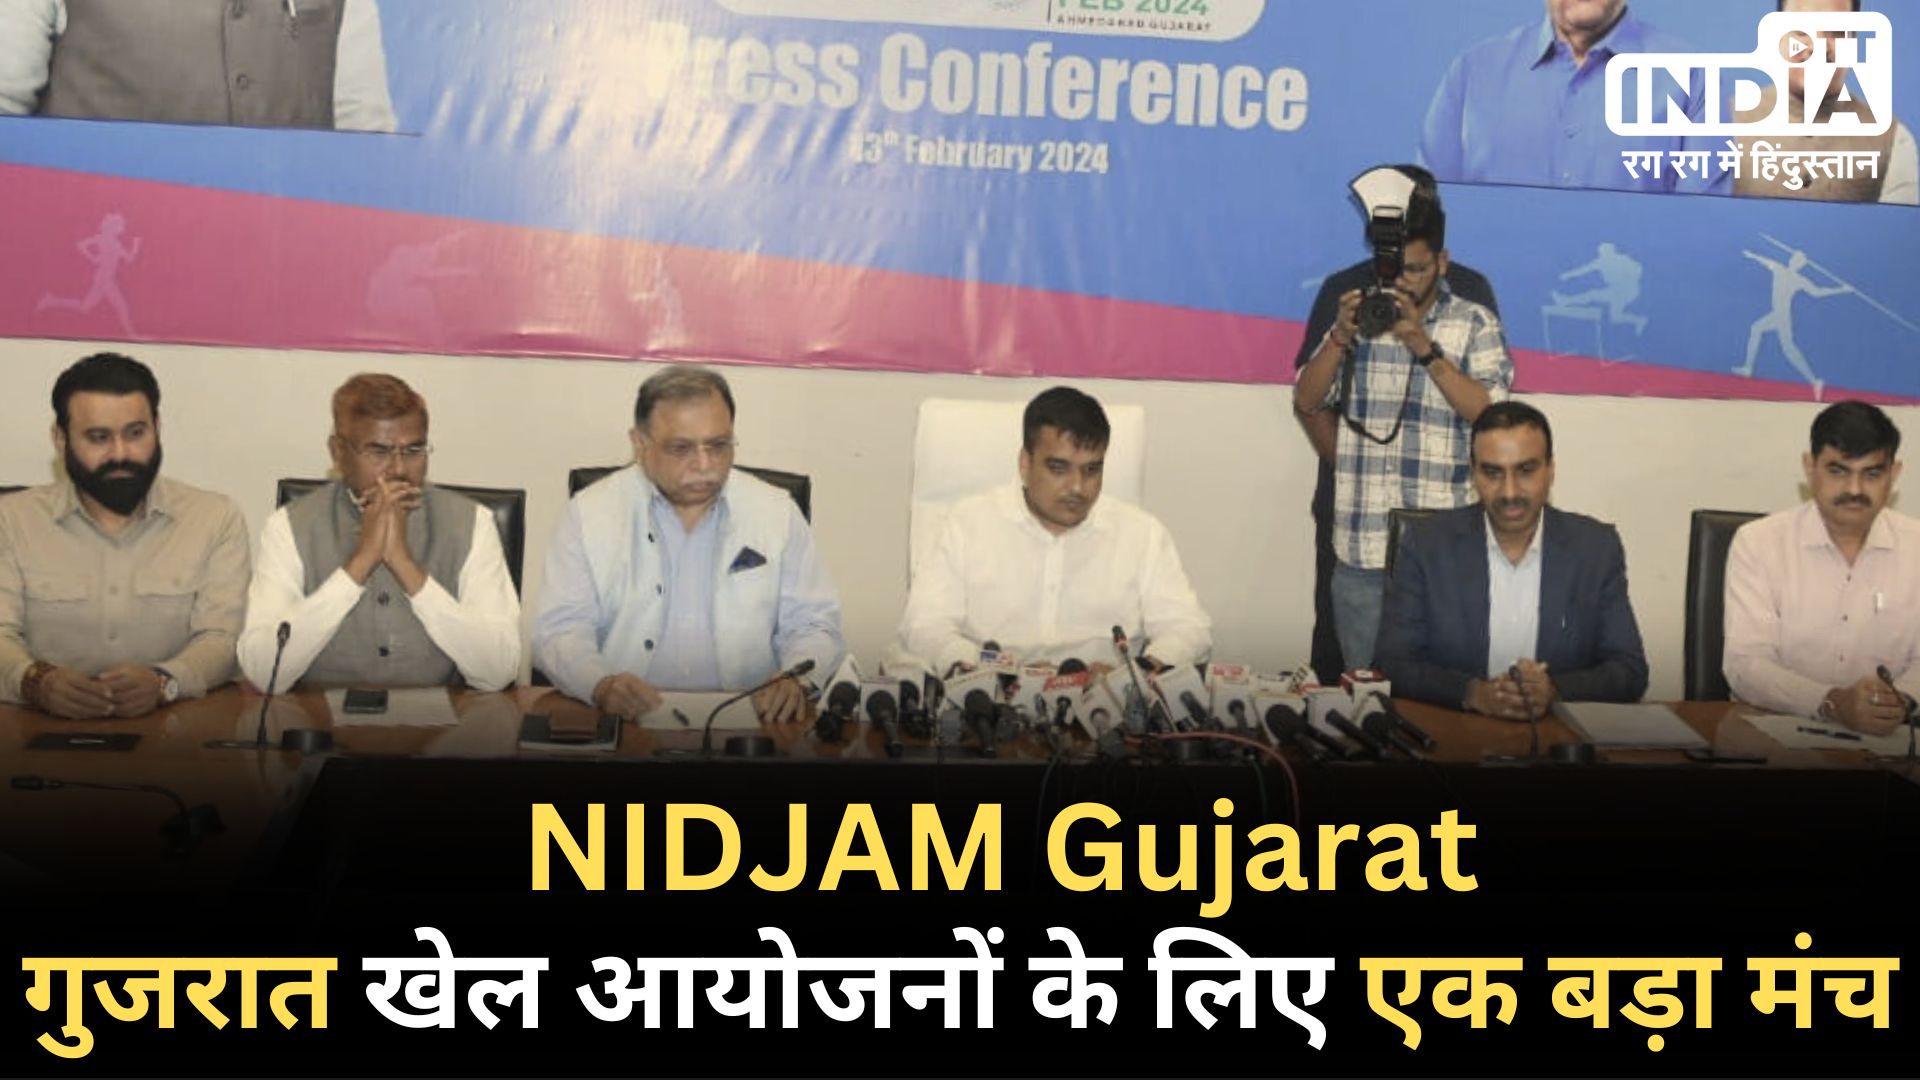 NIDJAM Gujarat: अहमदाबाद में होगा 16 से 18 फरवरी तक सबसे बड़ा खेल आयोजन